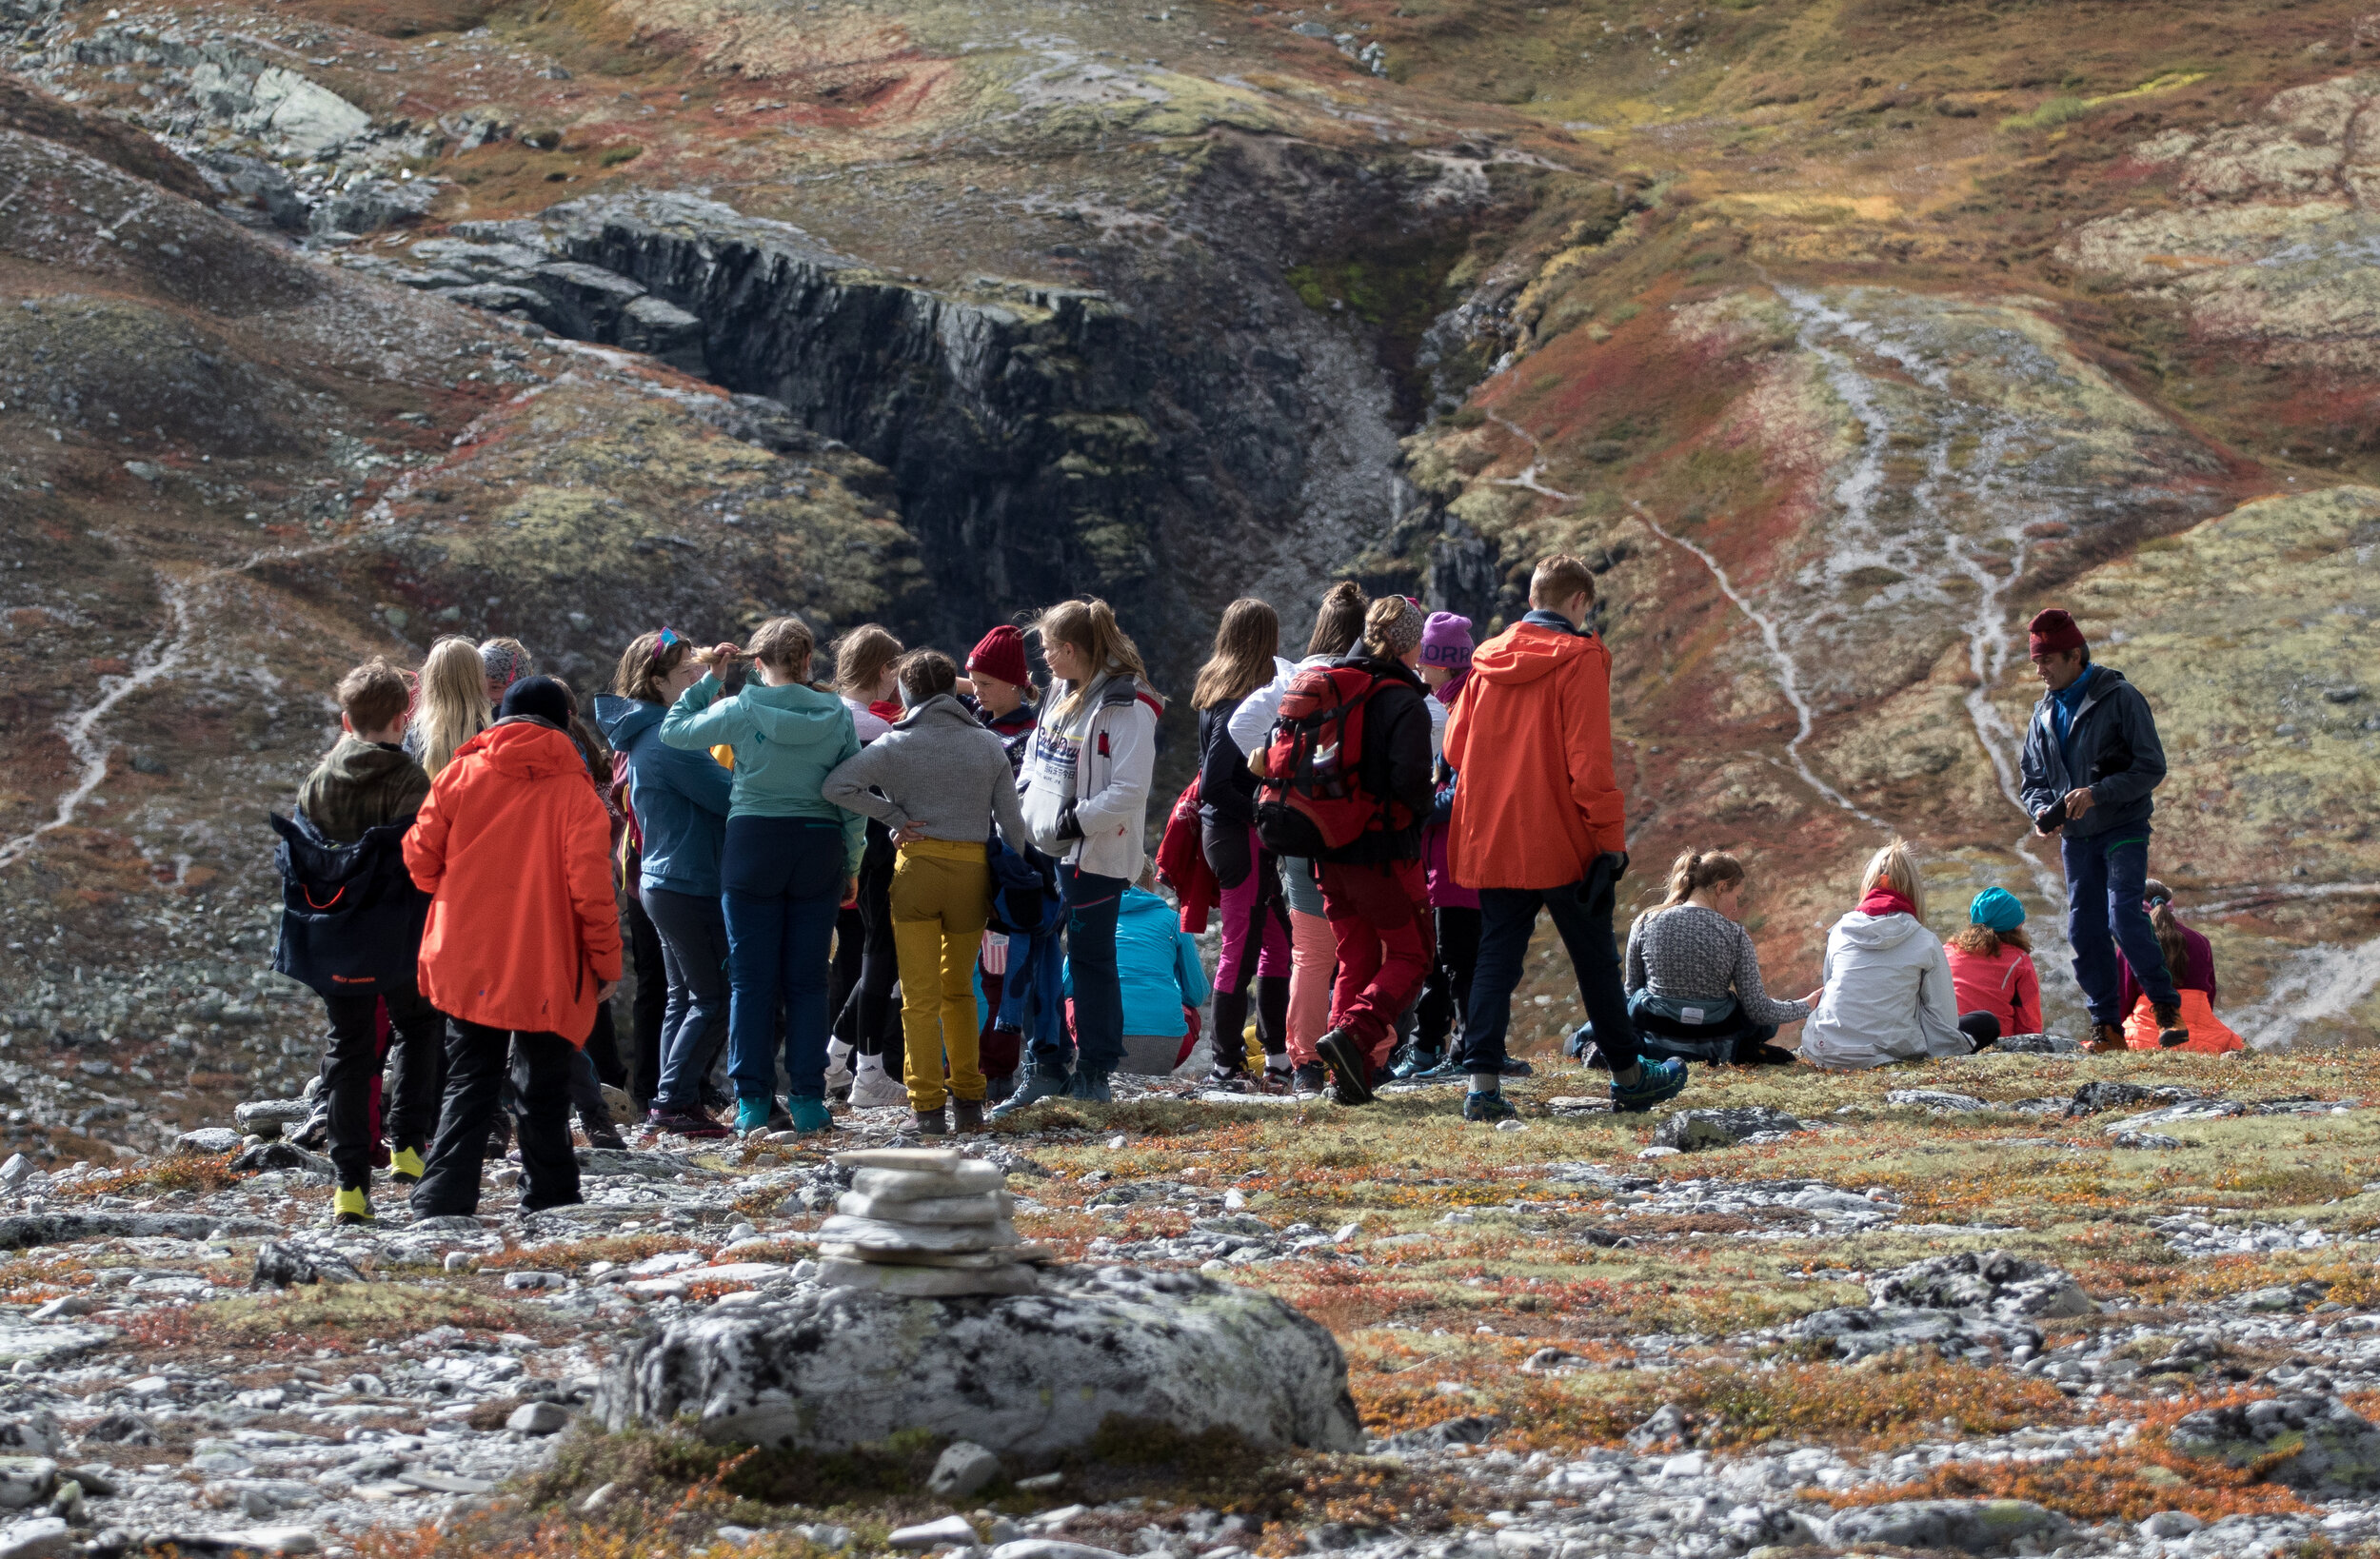 Åttandeklasse frå Otta ungdomsskule på tur i Rondane. Jutulhogget ved Rondvassbu i bakgrunnen. Foto: Kjell Bitustøyl